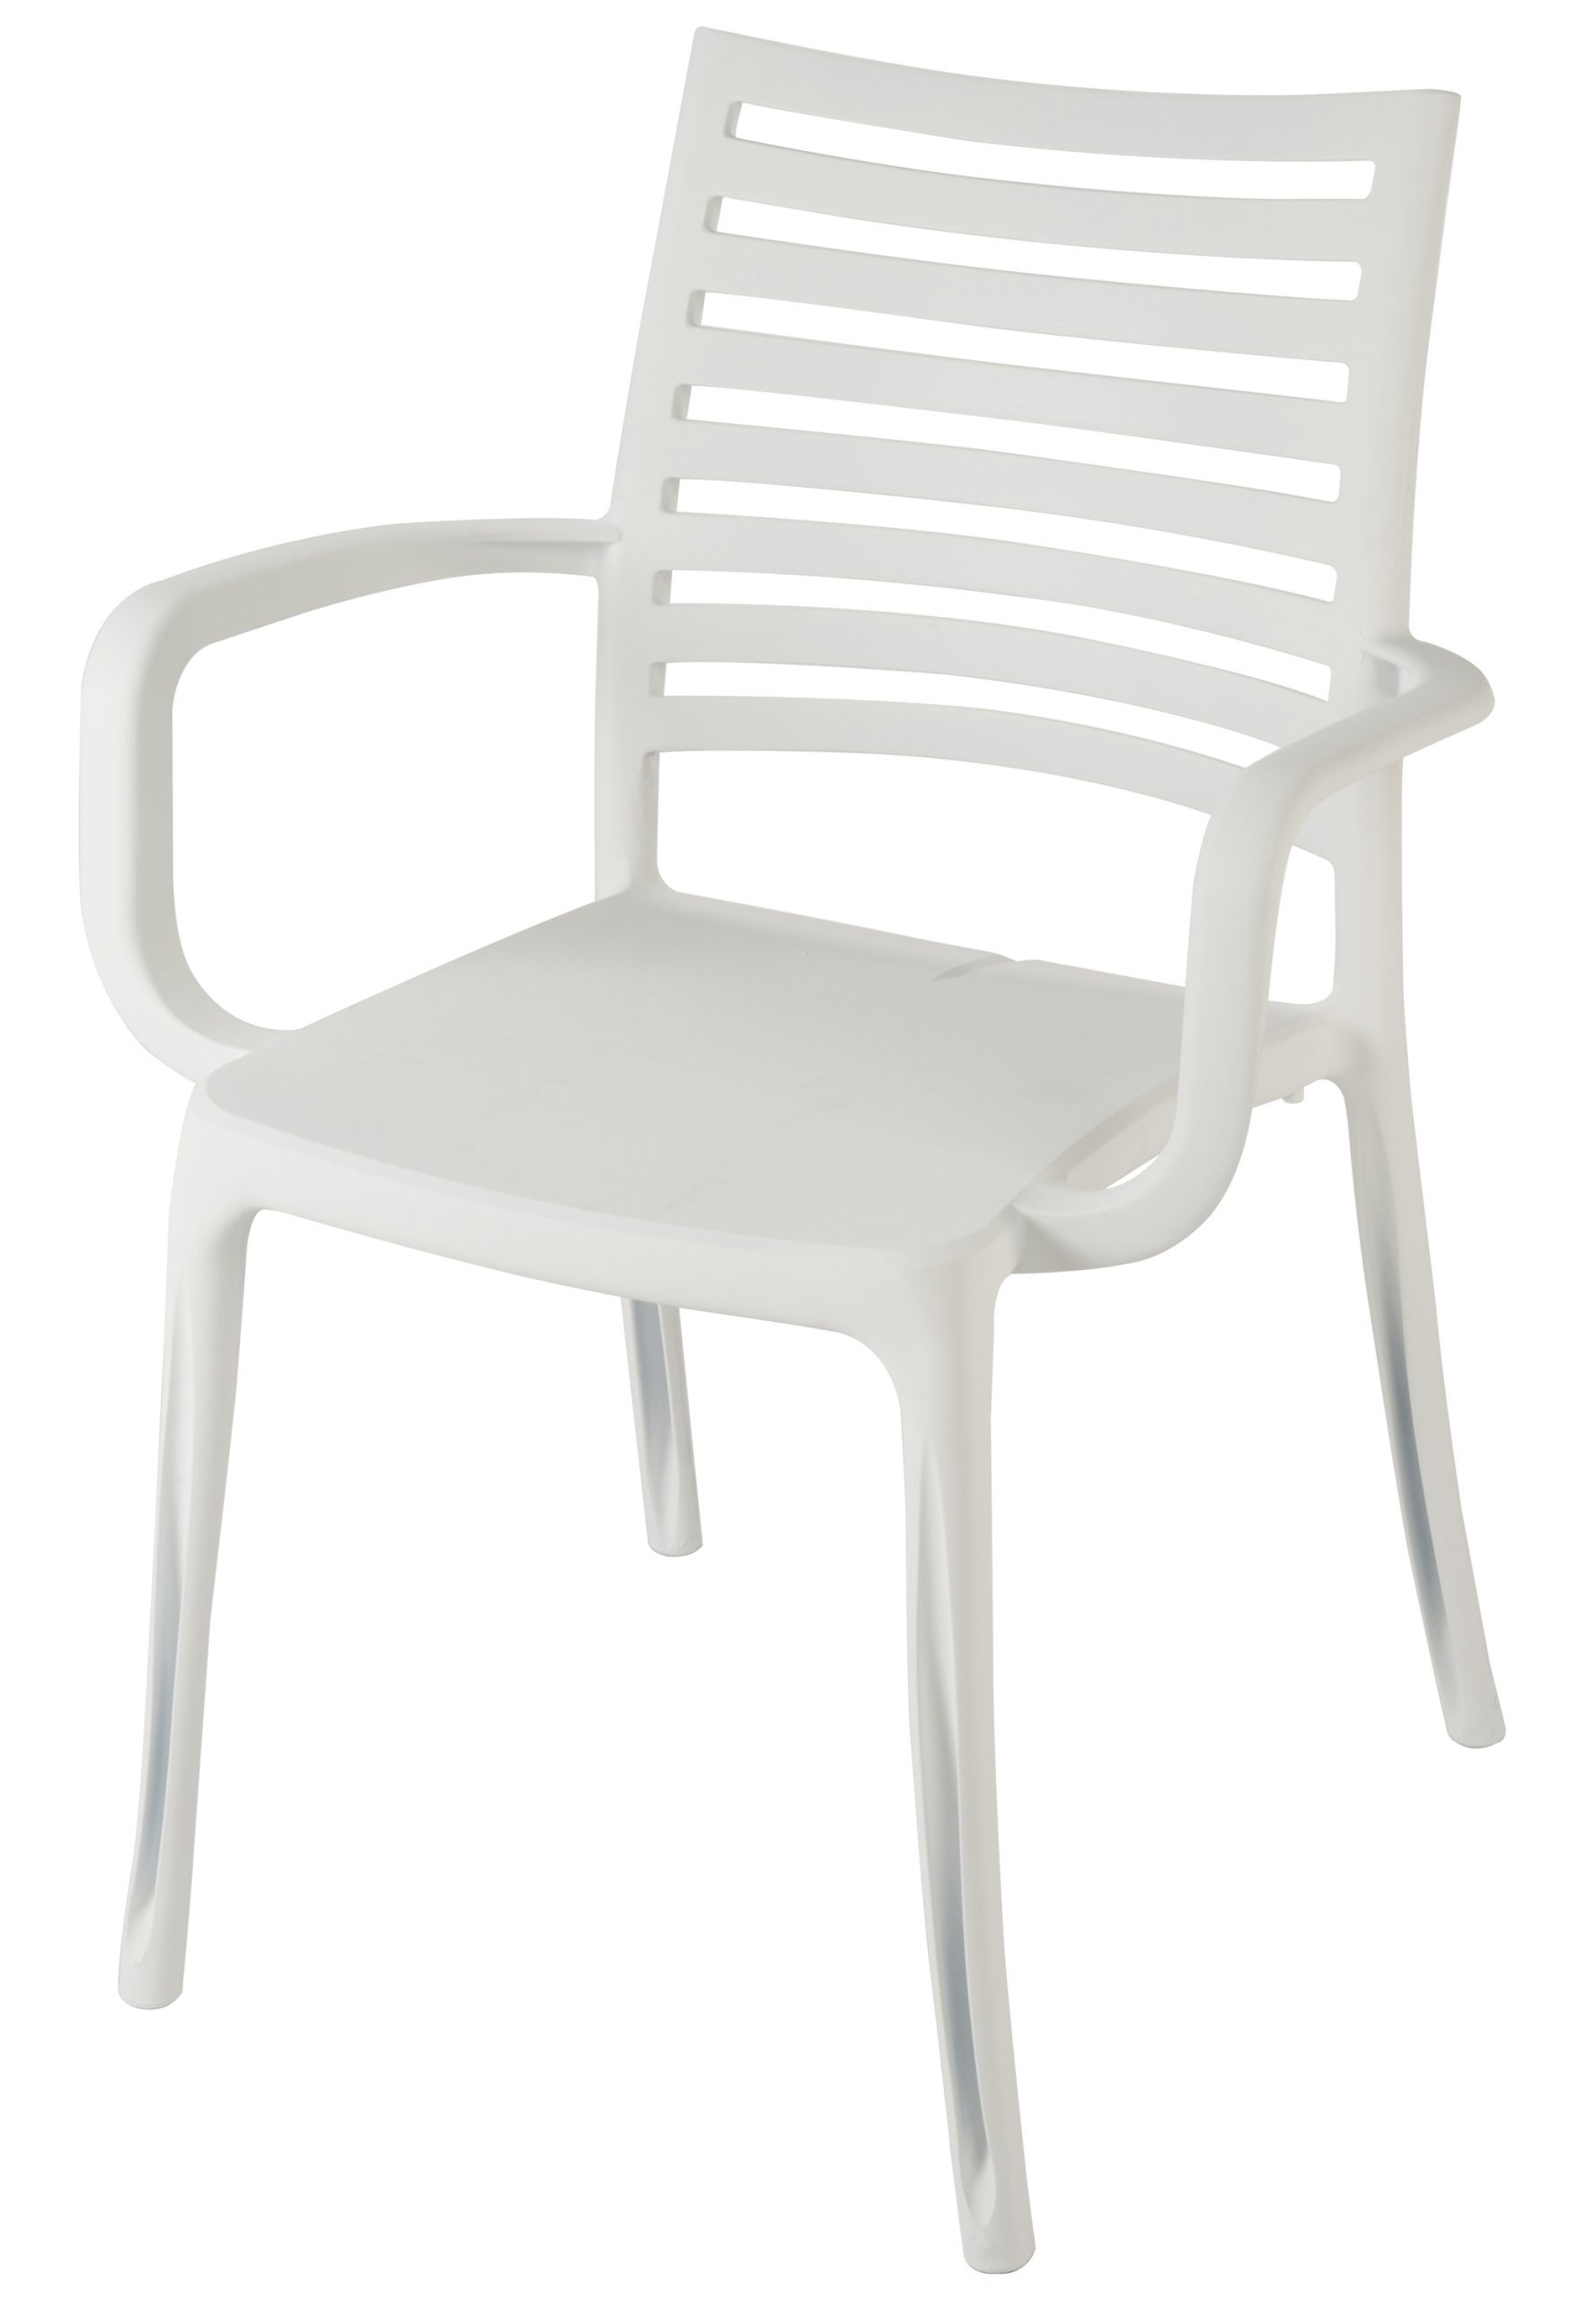 Sunday Garden Chair | Grosfillex dedans Fauteuil De Jardin Grosfillex